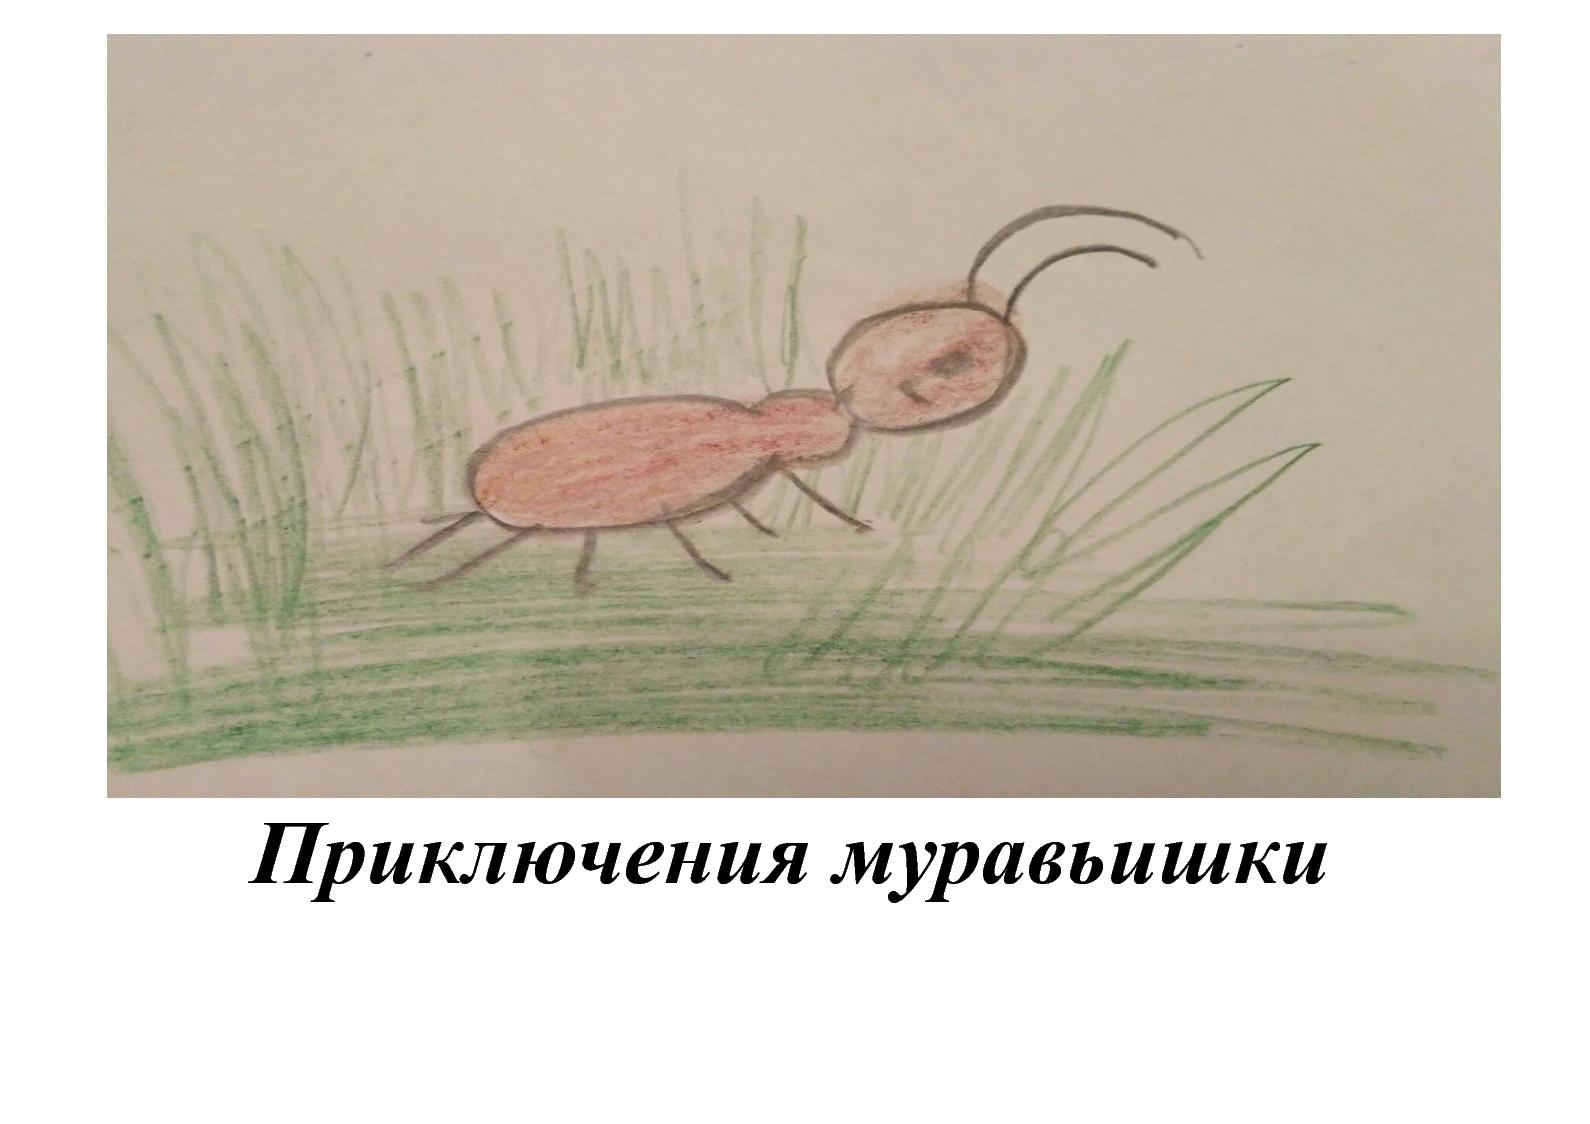 Иллюстрация к сказке приключения муравьишки